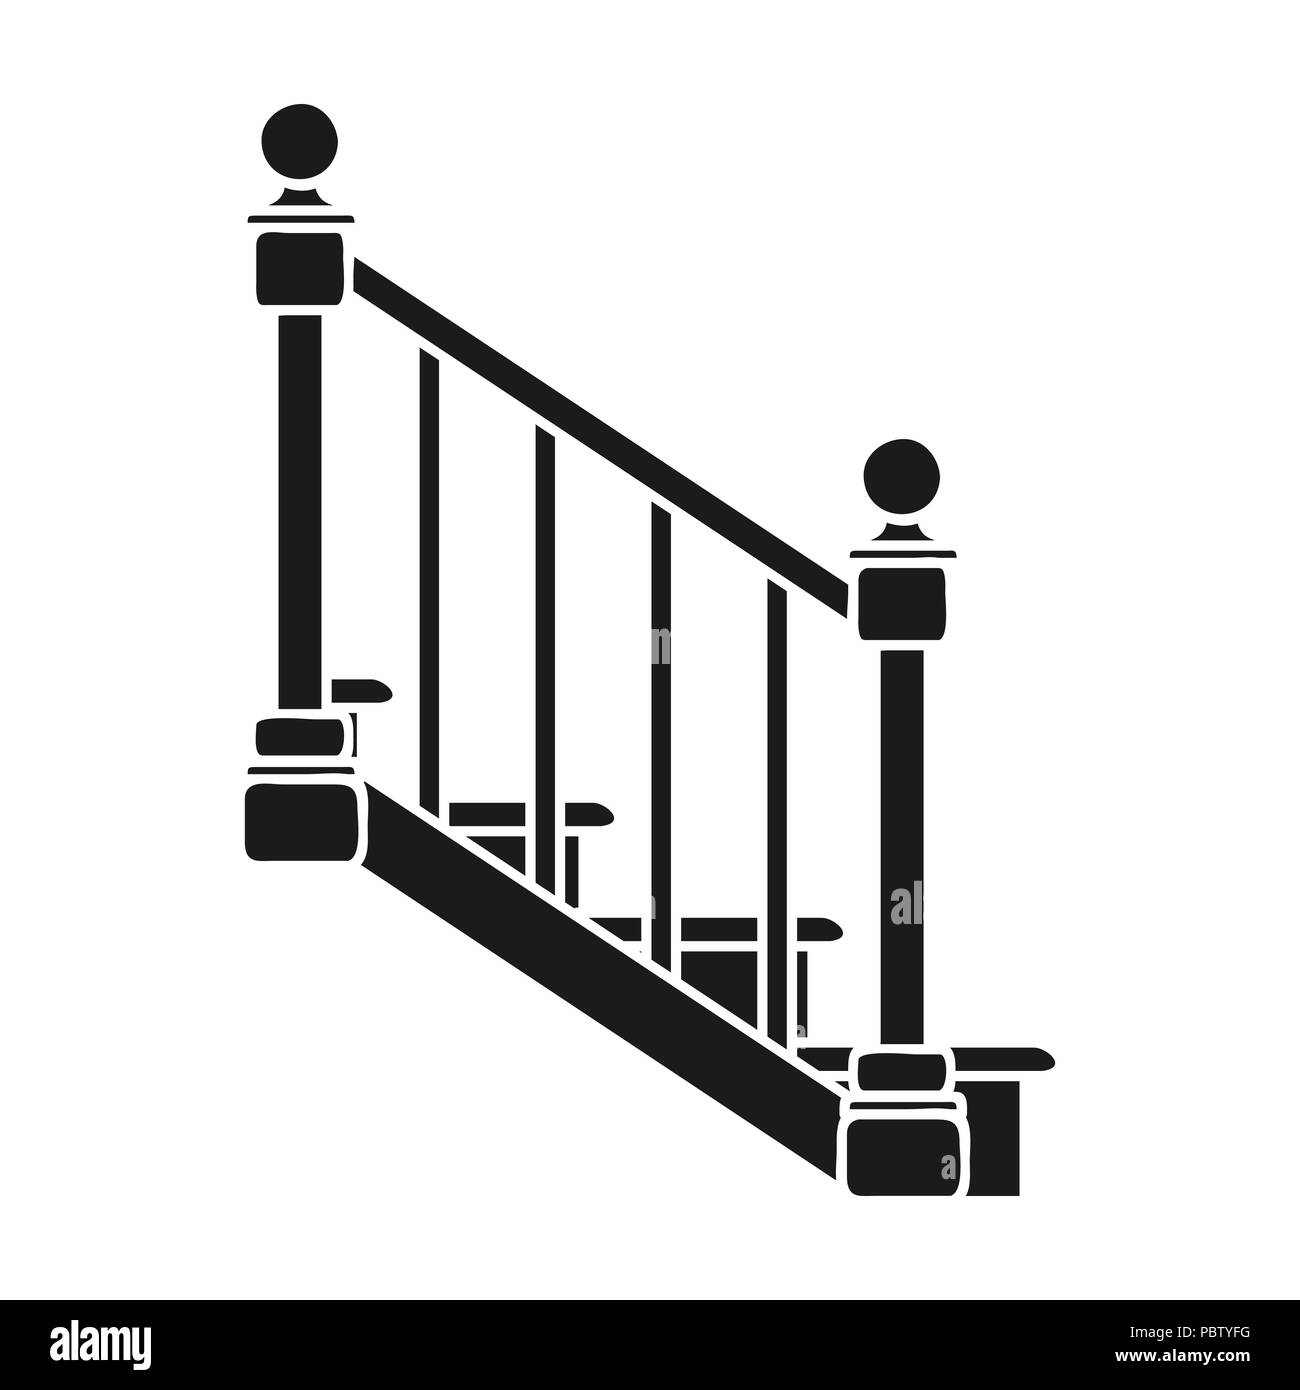 Treppen Symbol in schwarz auf weißem Hintergrund. Sägewerk und Holz symbol Vektor Illustration. Stock Vektor